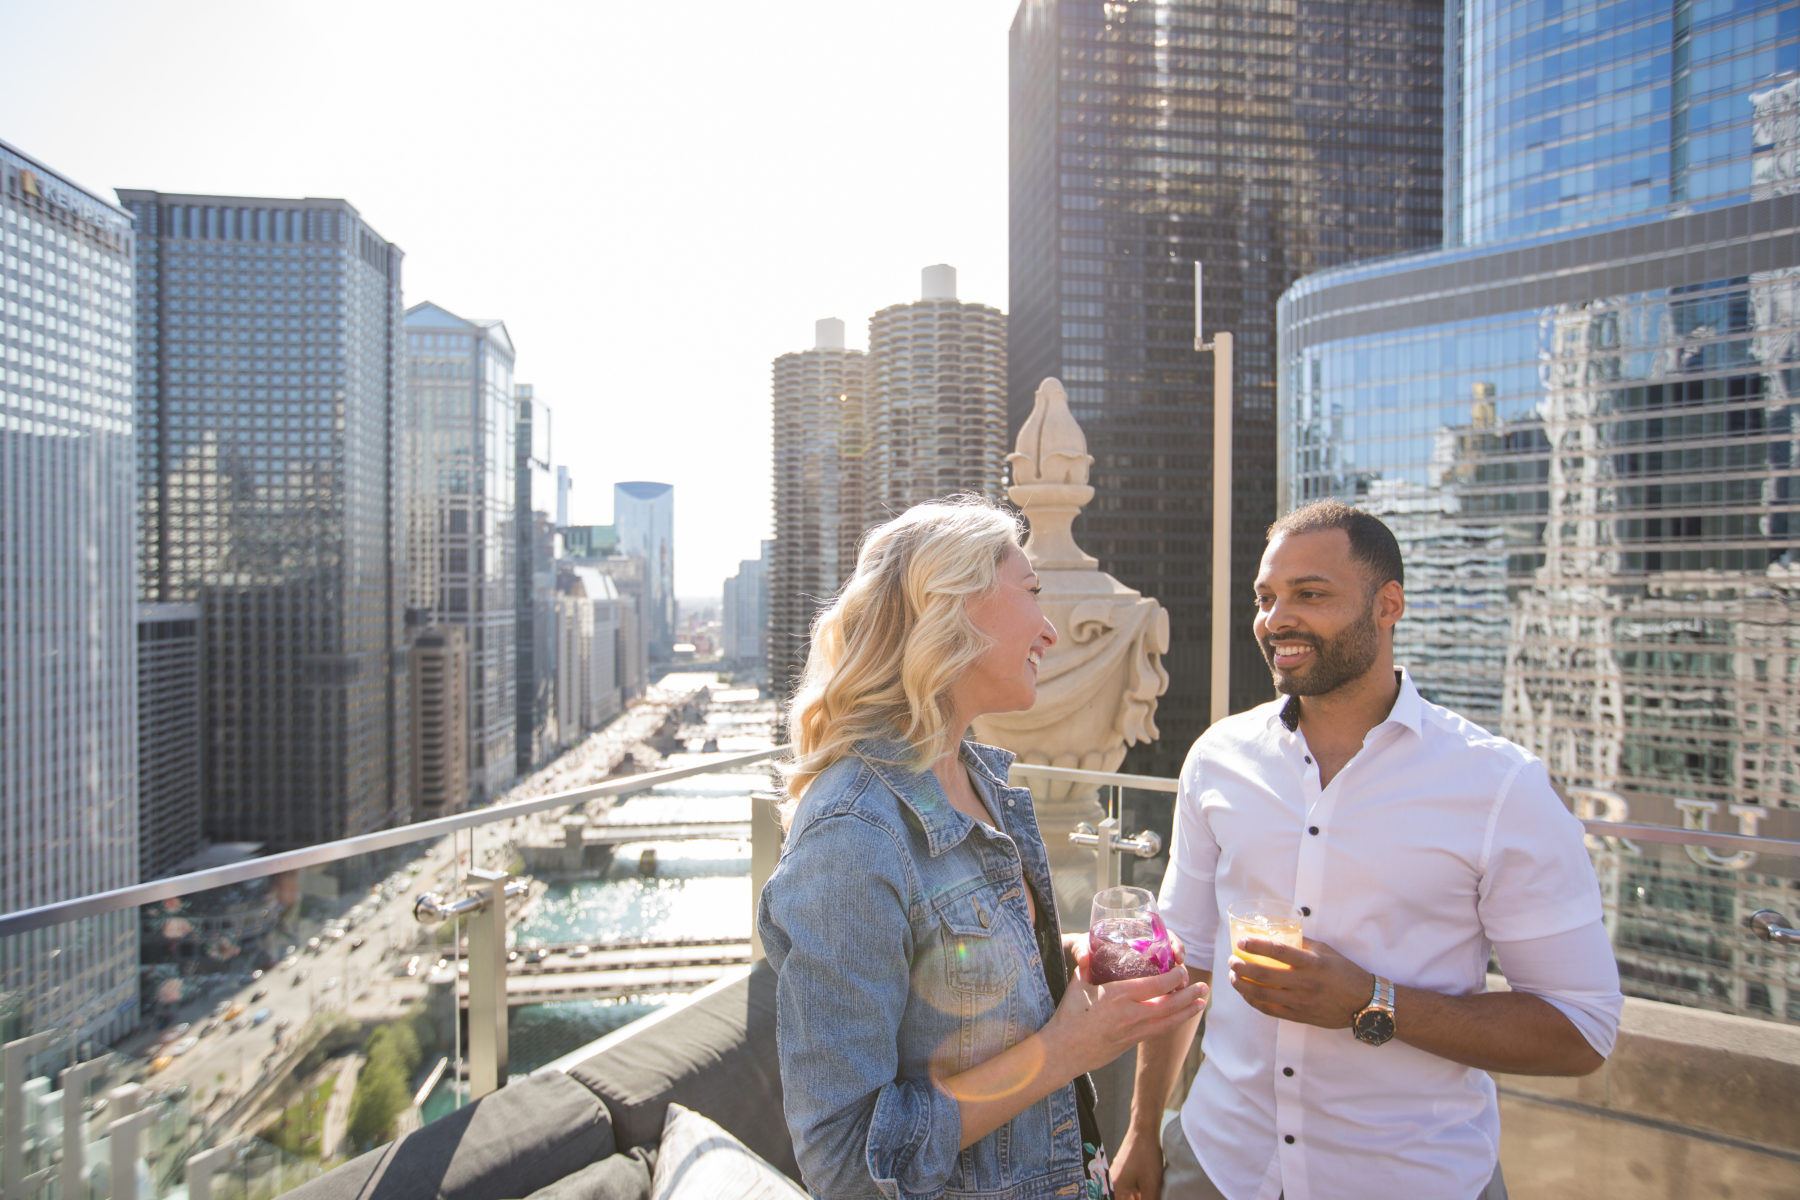 Top Chicago Rooftop Bars & Restaurants | Find Rooftop Bars ...